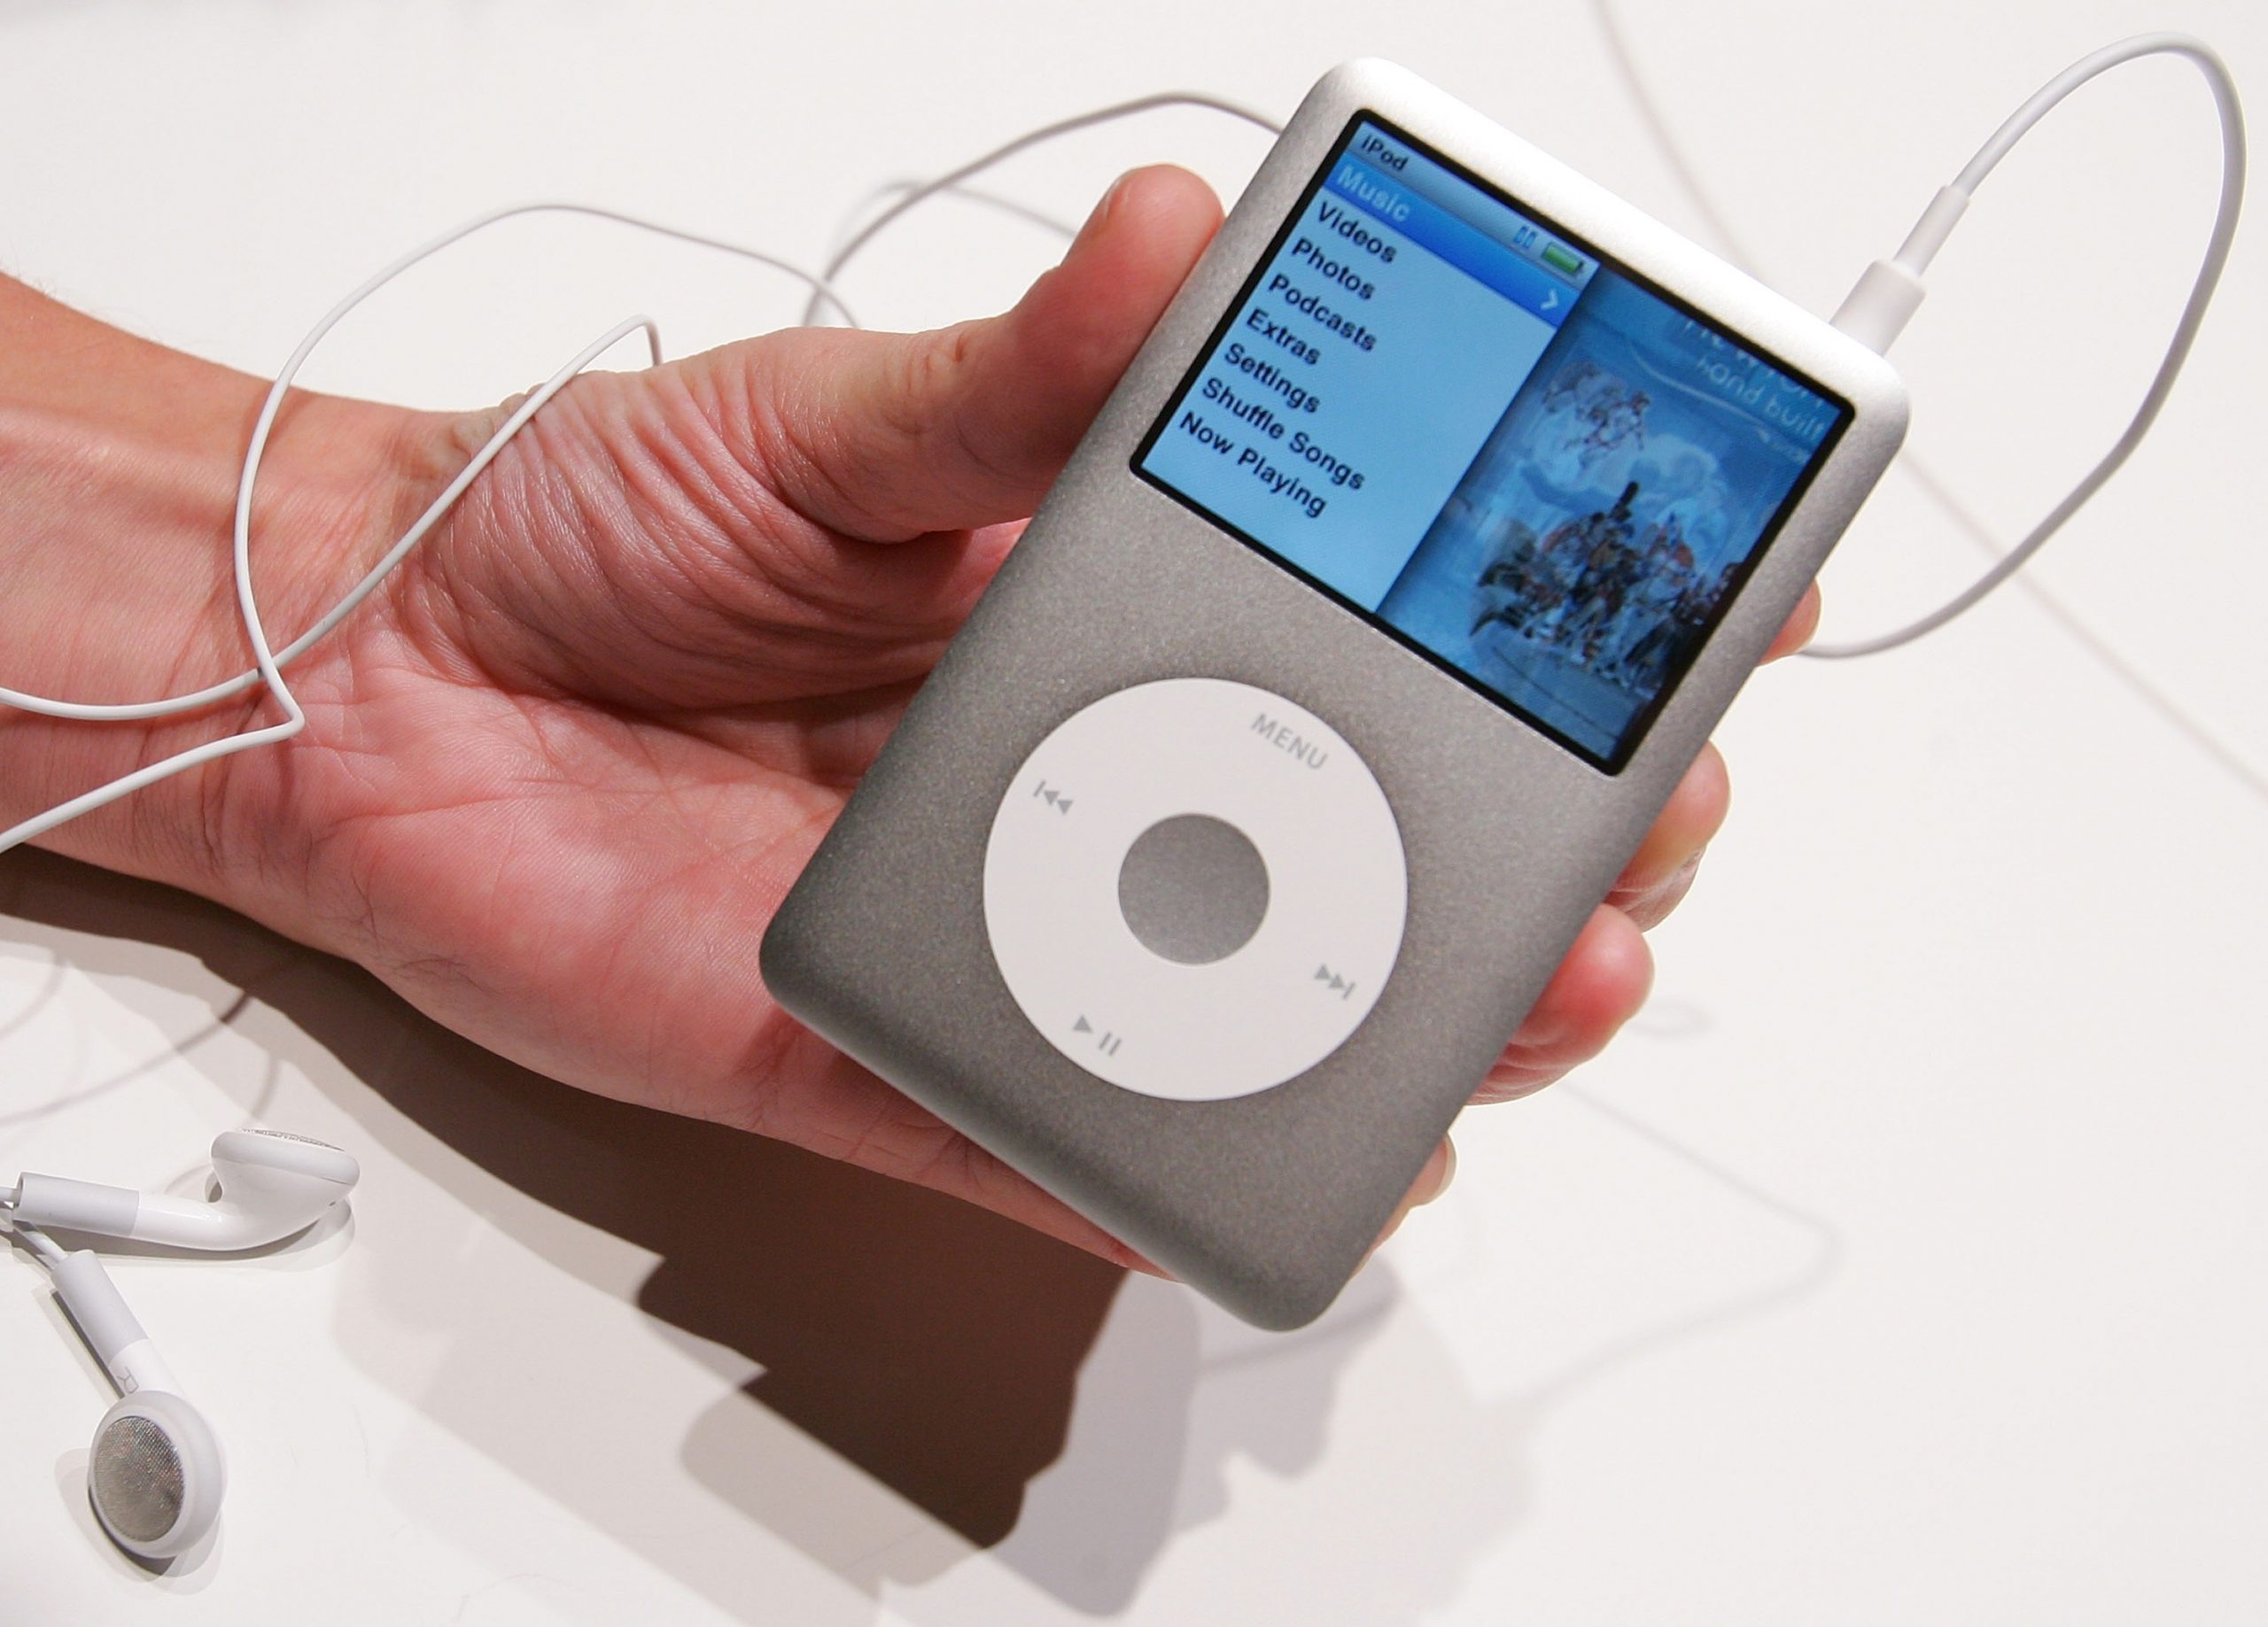 Tổng hợp các dòng máy nghe nhạc iPod mà Apple đã từng ra mắt